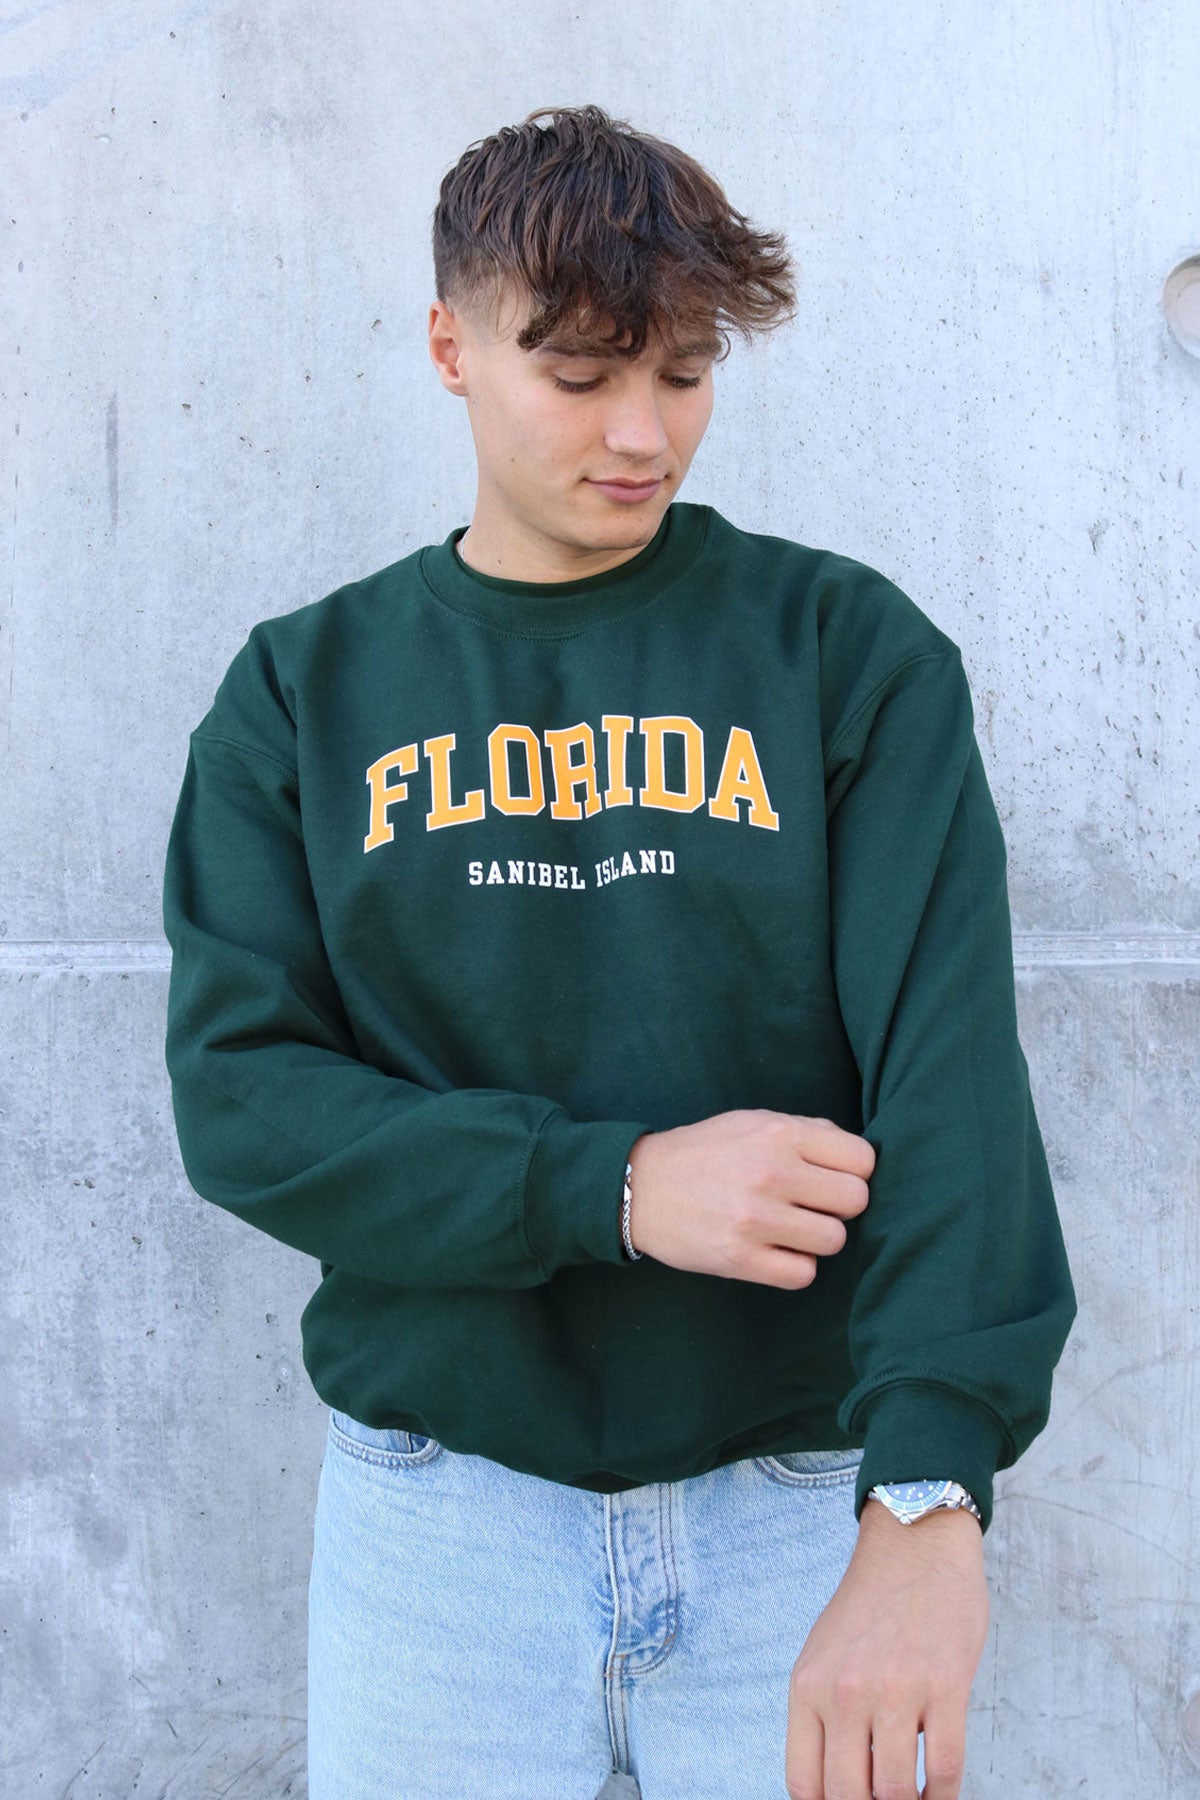 Florida Sweatshirt